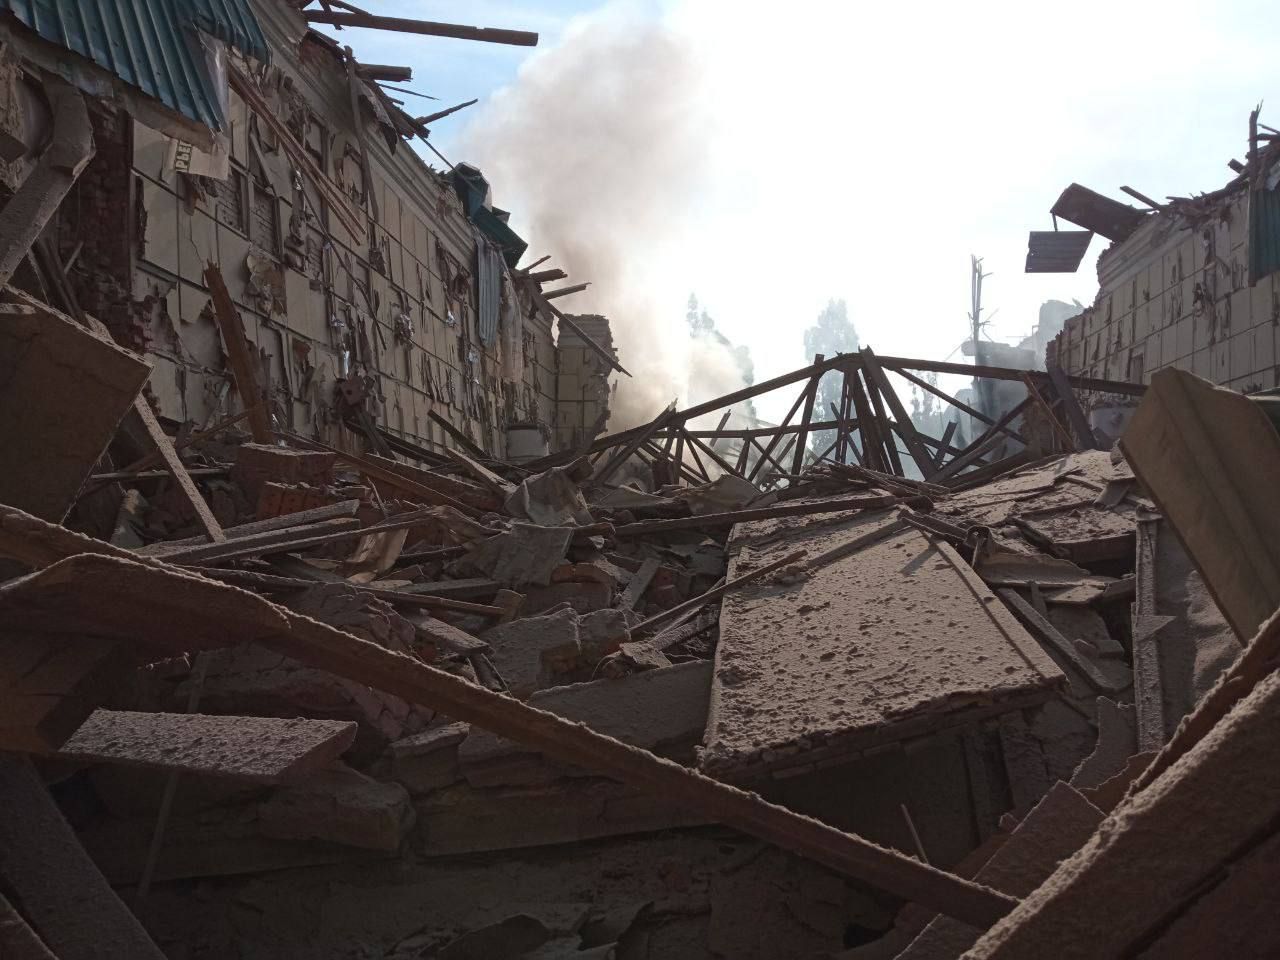  В Чугуеве россияне уничтожили дом культуры, где прятались люди - фото разрушений 